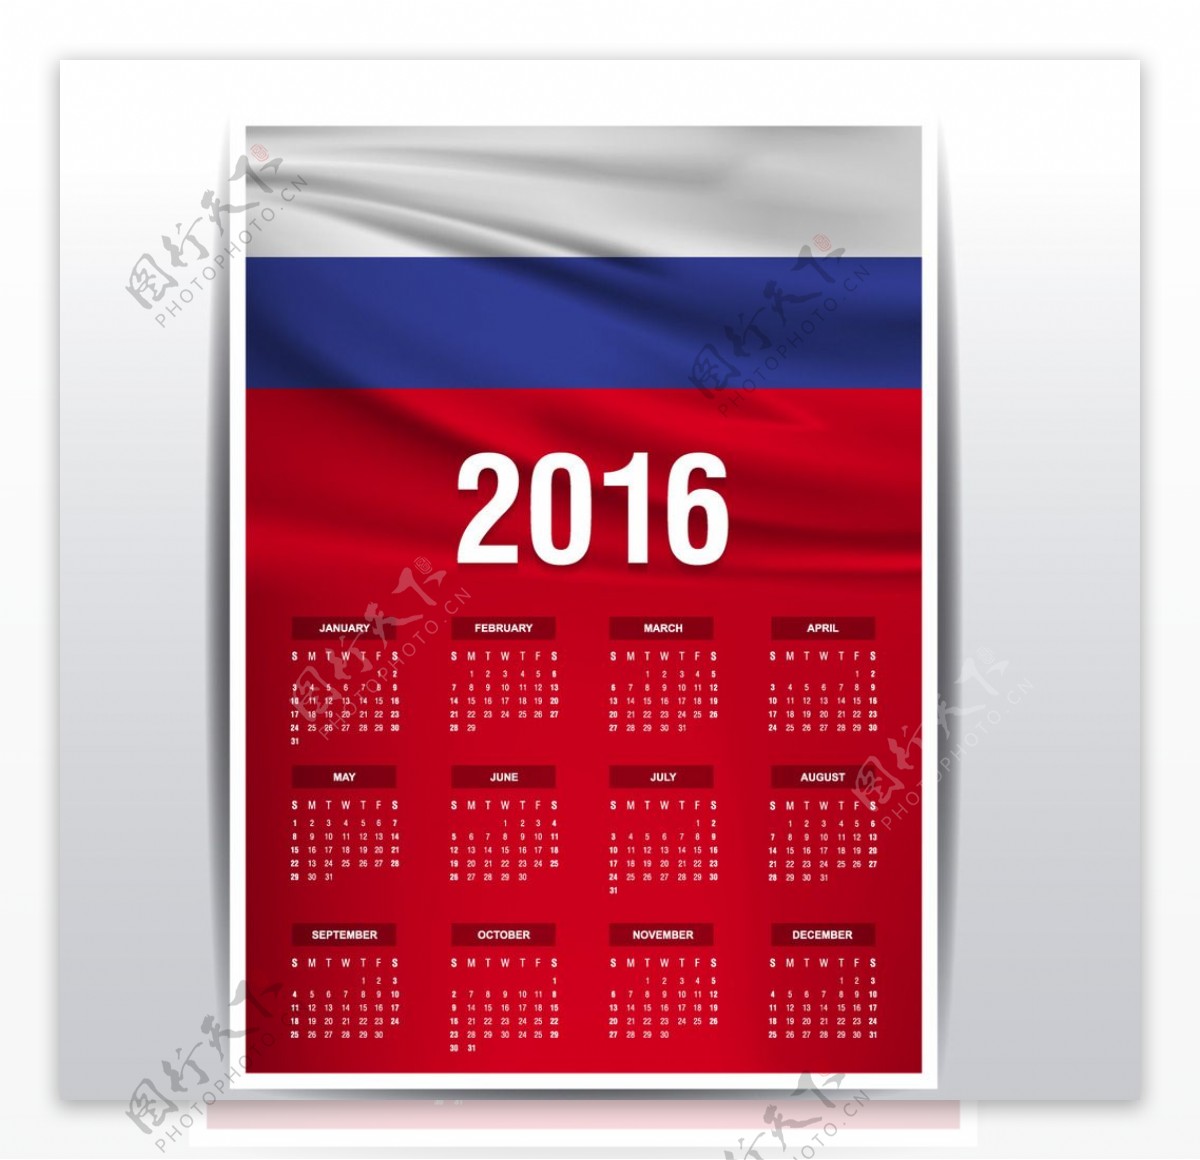 俄罗斯国旗日历